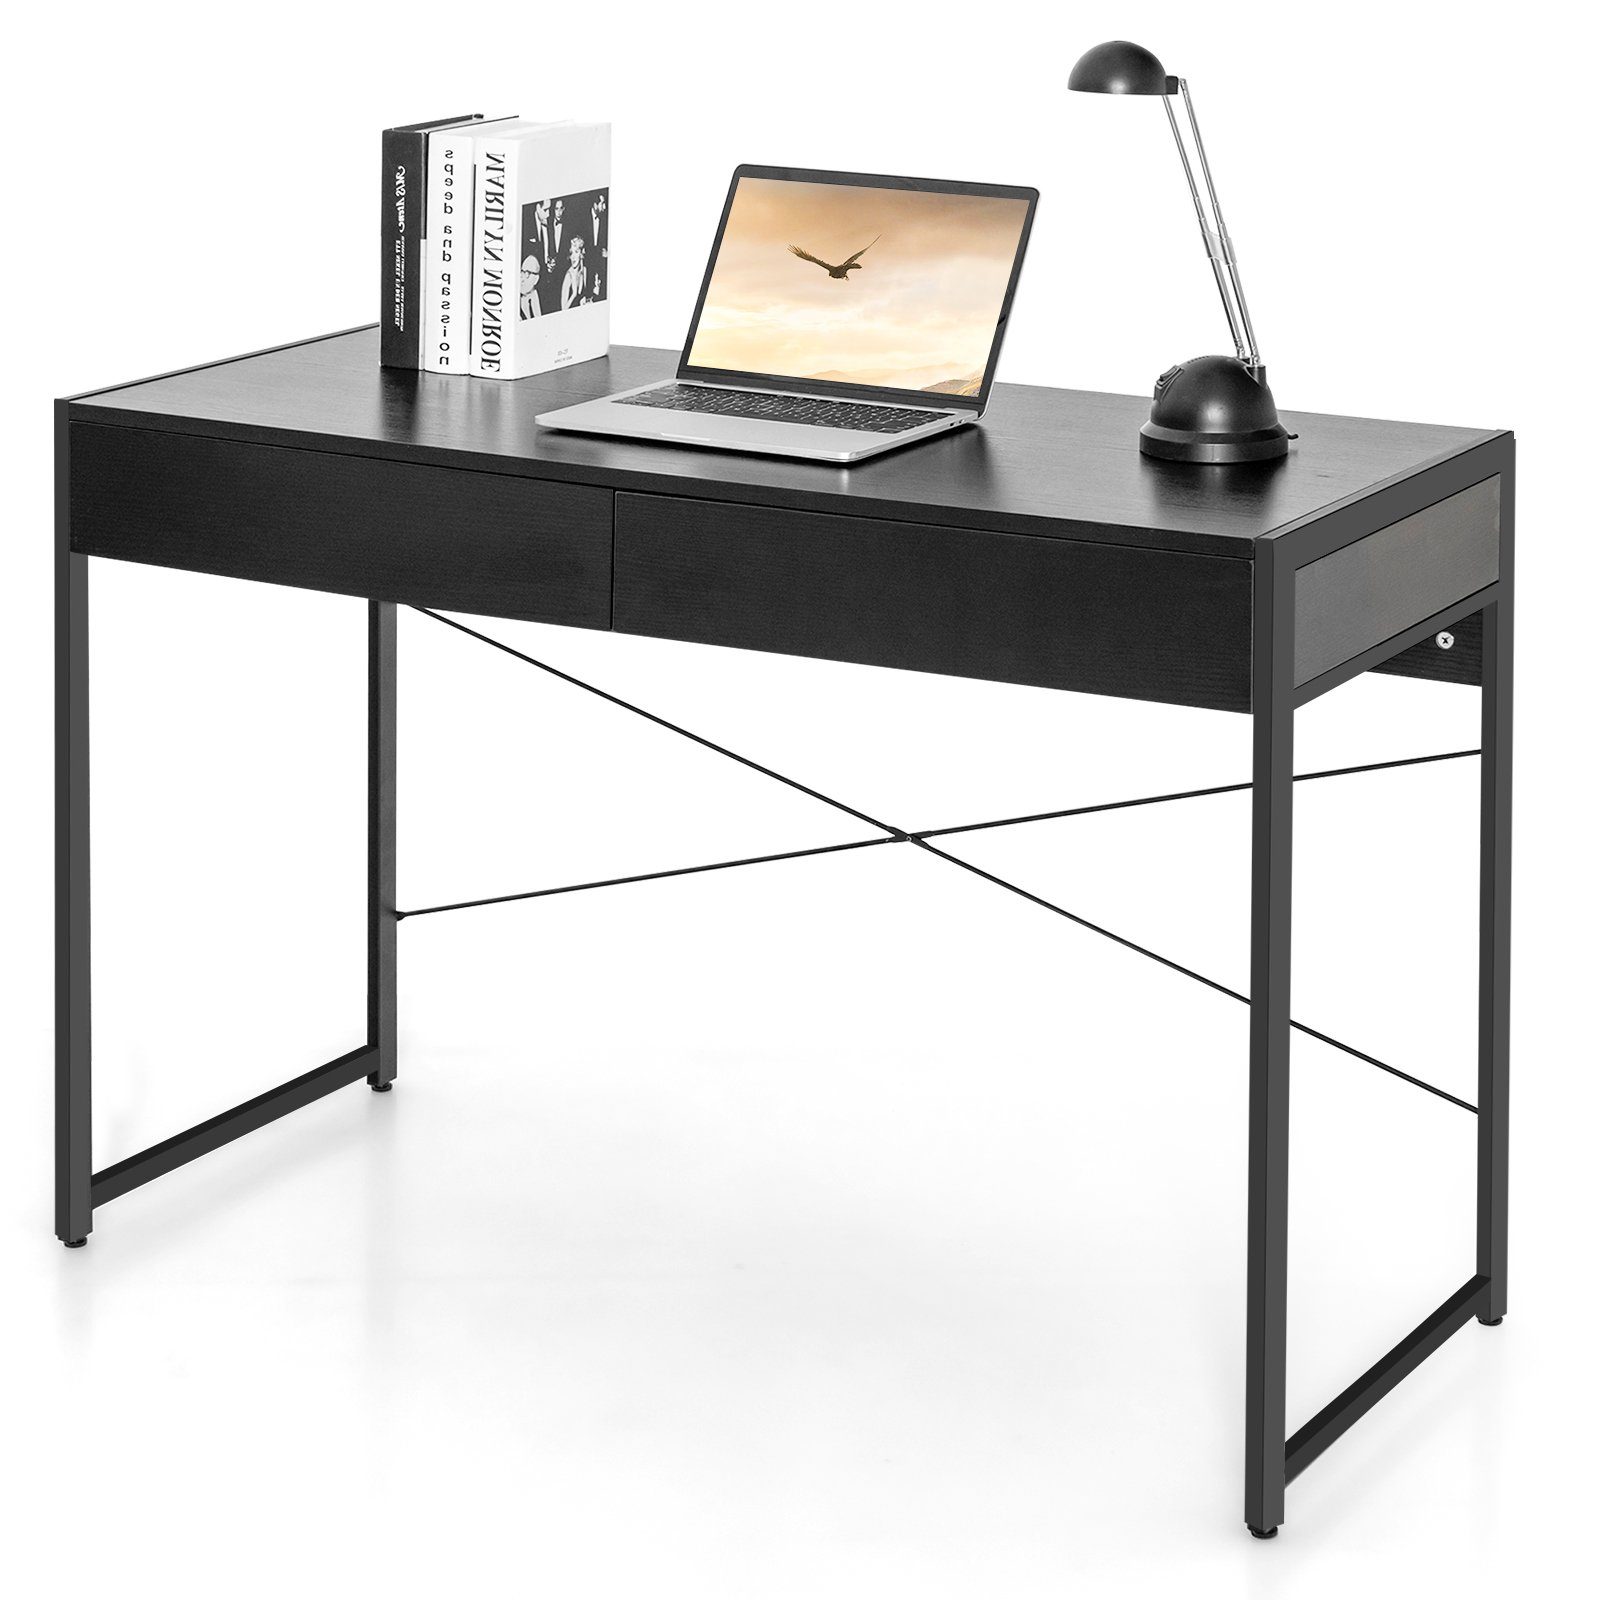 COSTWAY Schreibtisch, mit 2 Schubladen, 100kg belasbar, 112 x 48 x 76 cm